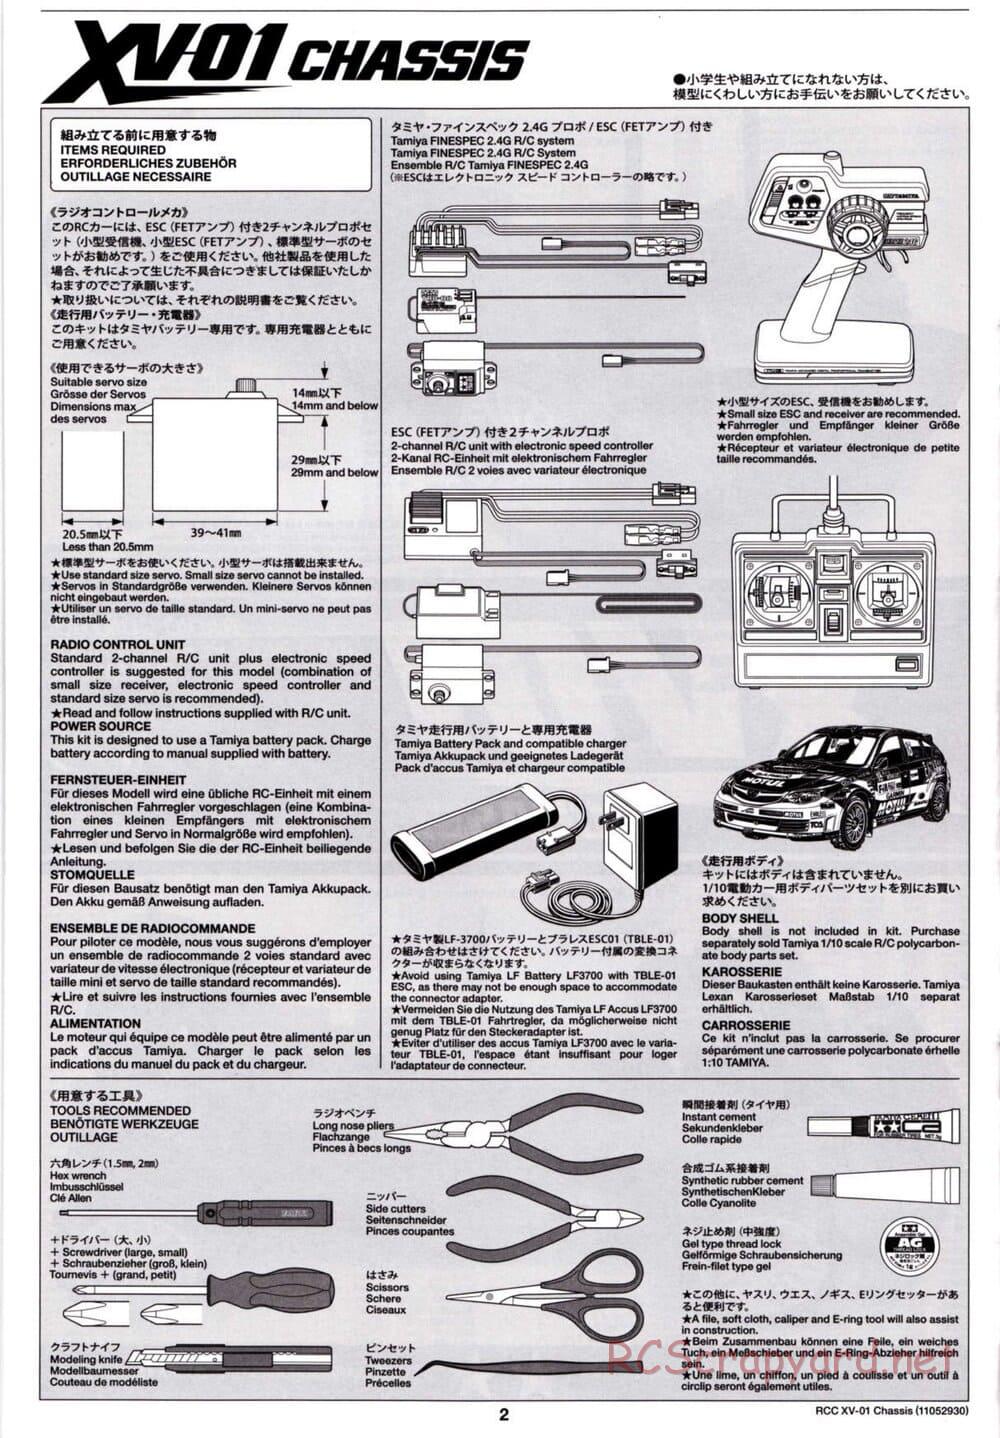 Tamiya - XV-01 Chassis - Manual - Page 2